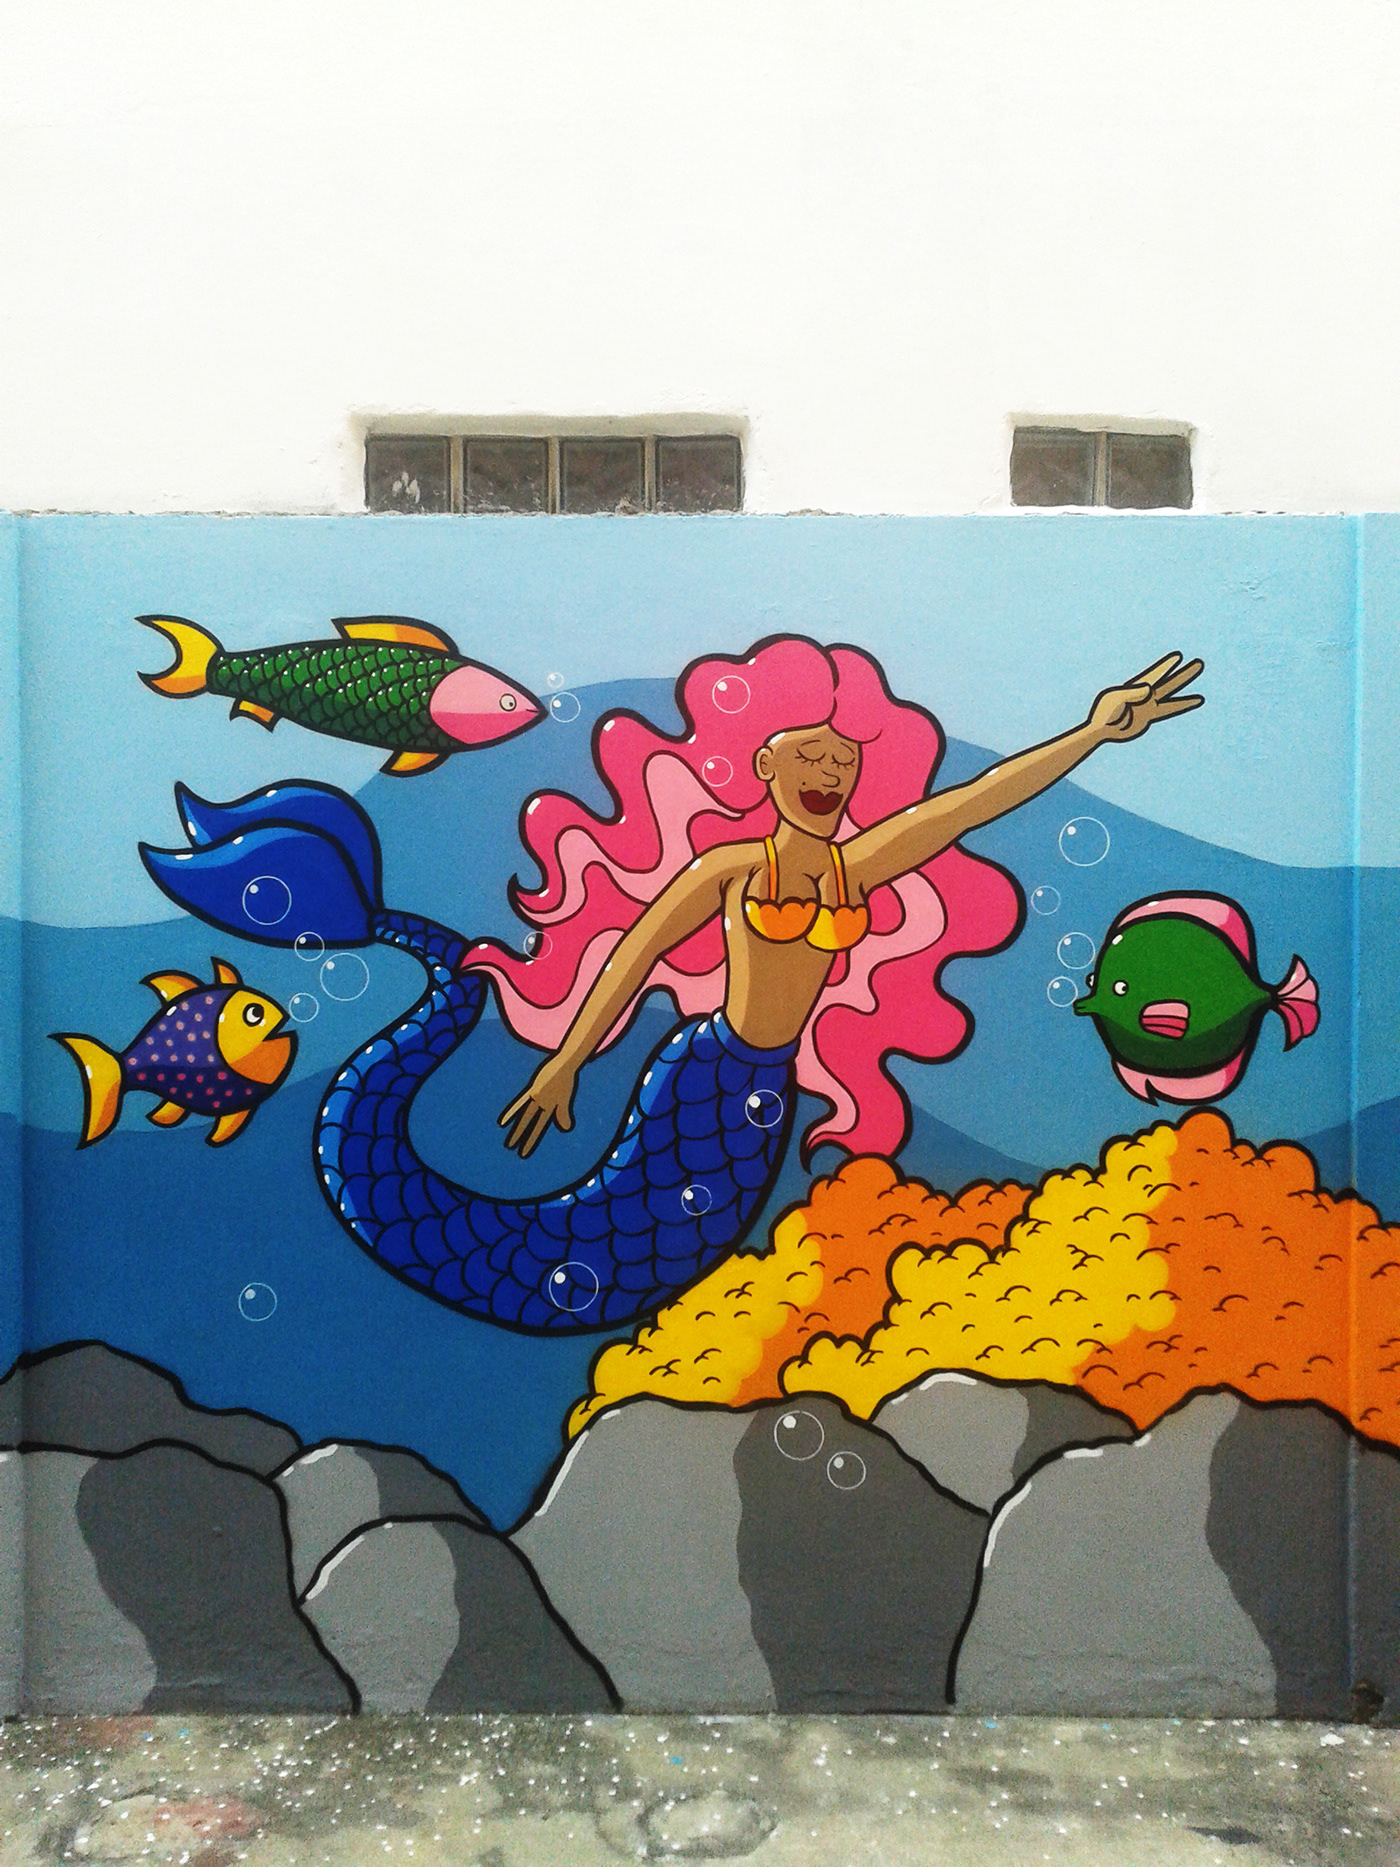 Graffiti Urbanart streetart grafite oceano praia Fundo do mar peixe agua spray